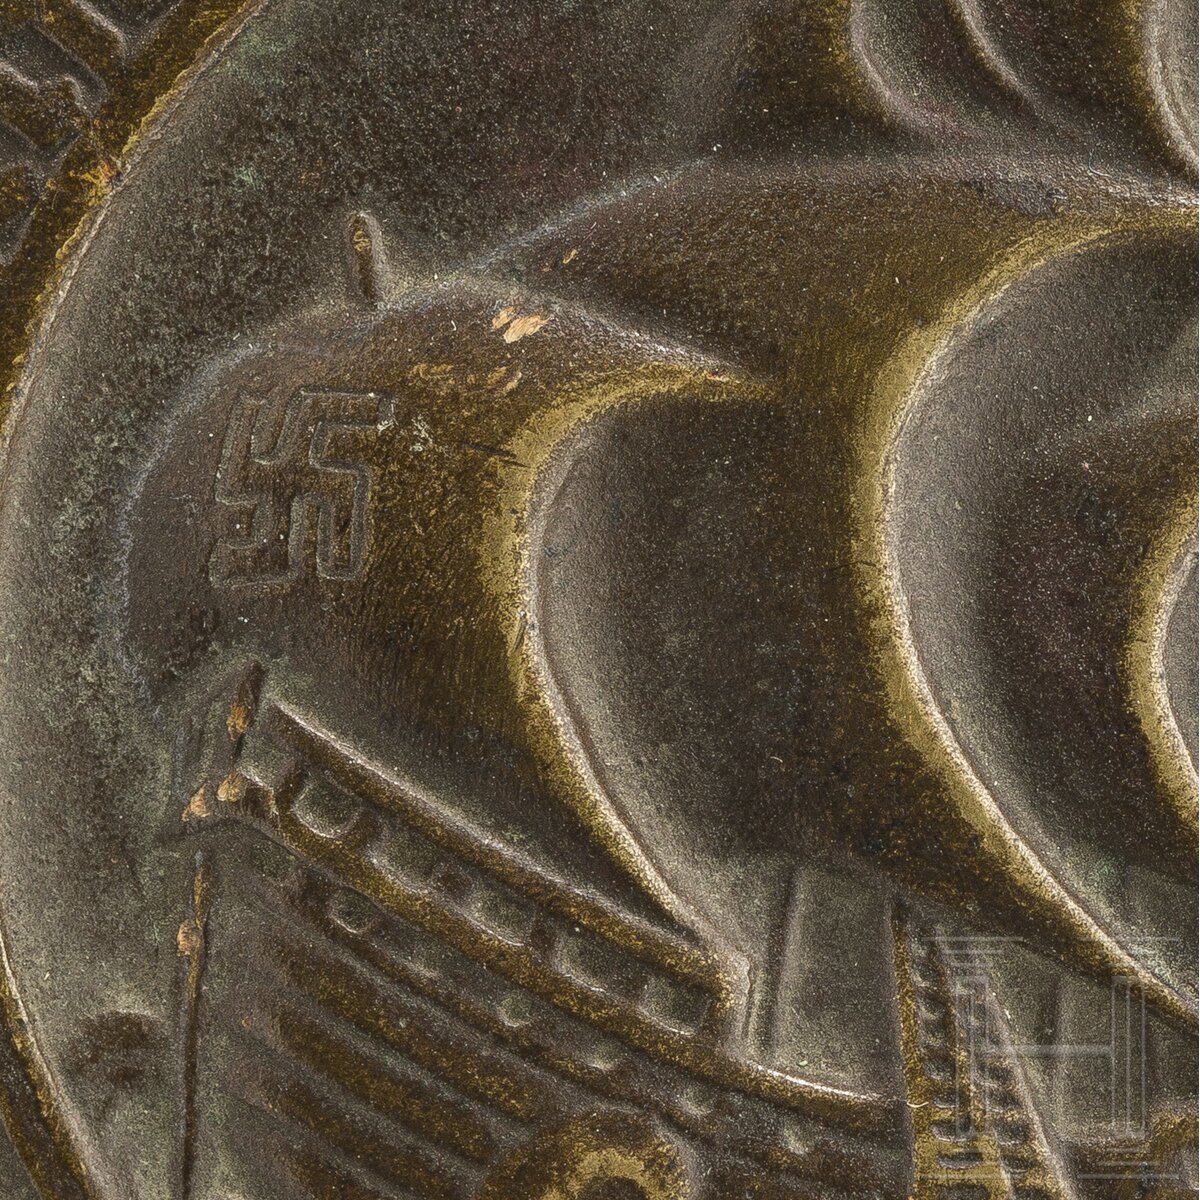 Medaille "Für Verdienste um das Auslands-Deutschtum" - Image 3 of 3